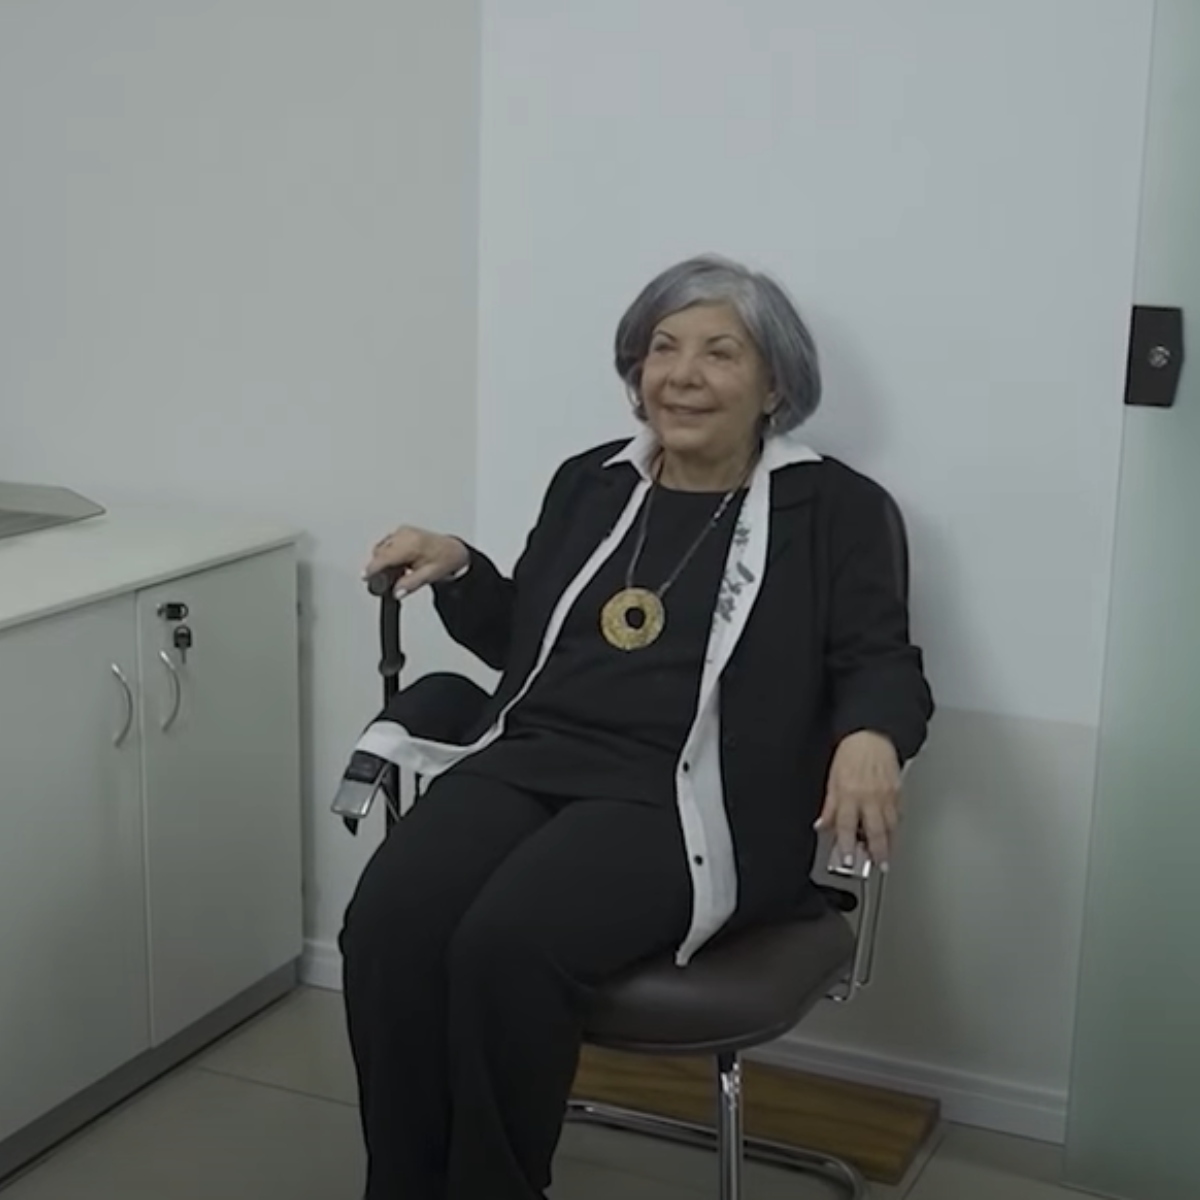  Mulher demitida e perseguida na ditadura é recontratada 46 anos depois, no Paraná 